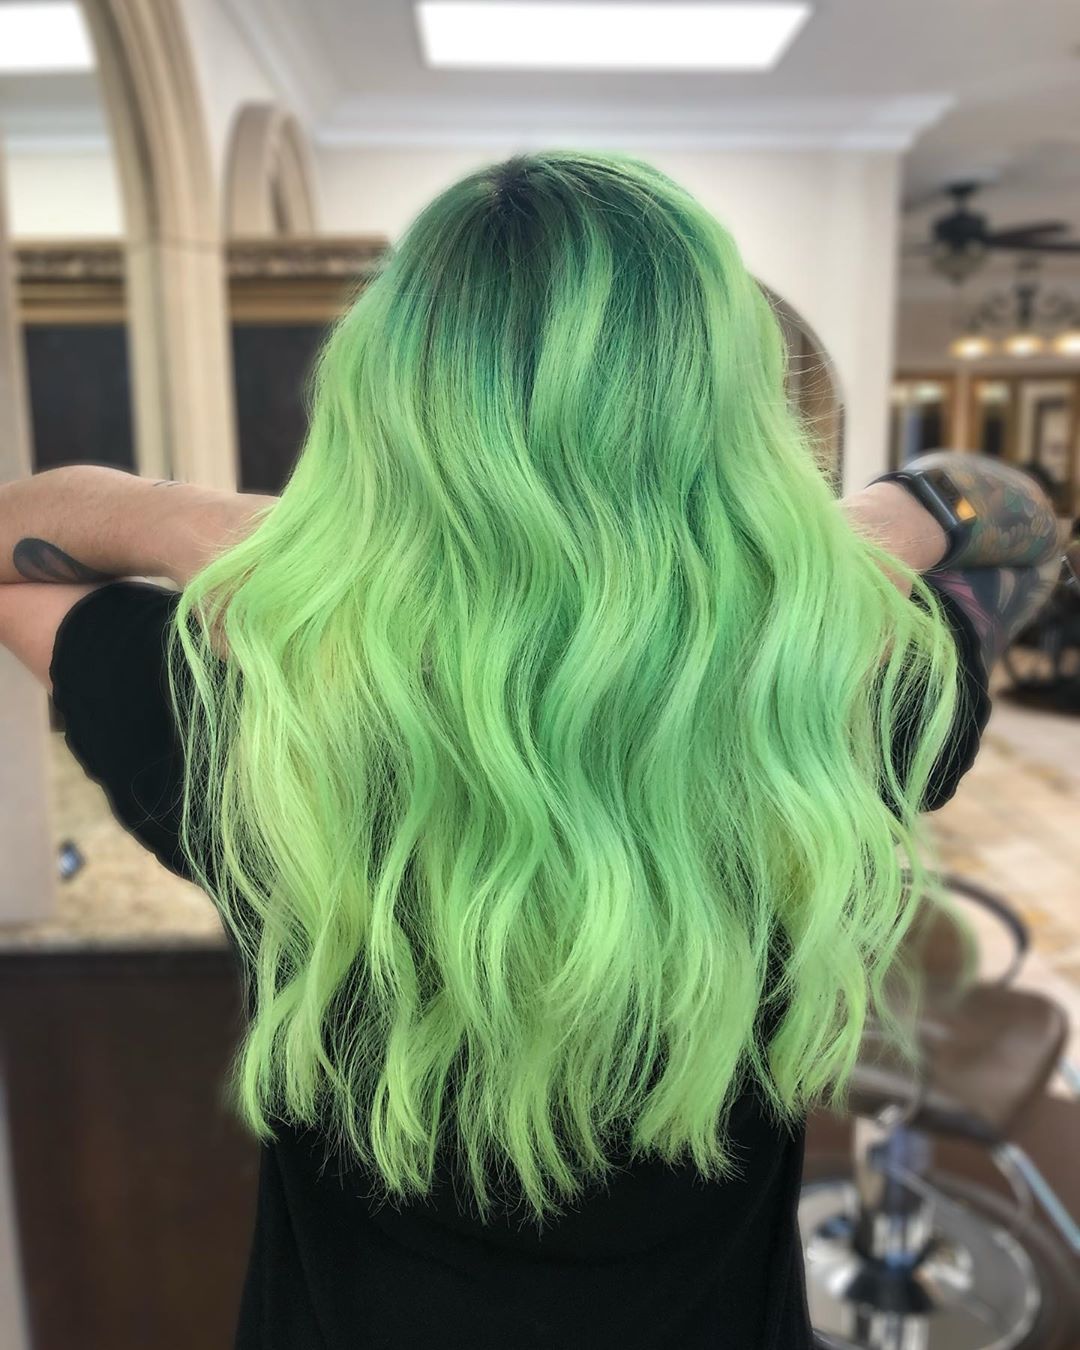 Hóa thân” thành nàng tiên cá với 10 màu tóc xanh cực kỳ ảo diệu này – #1  Công Ty Thiết Kế Website giá rẻ – Azawebsite